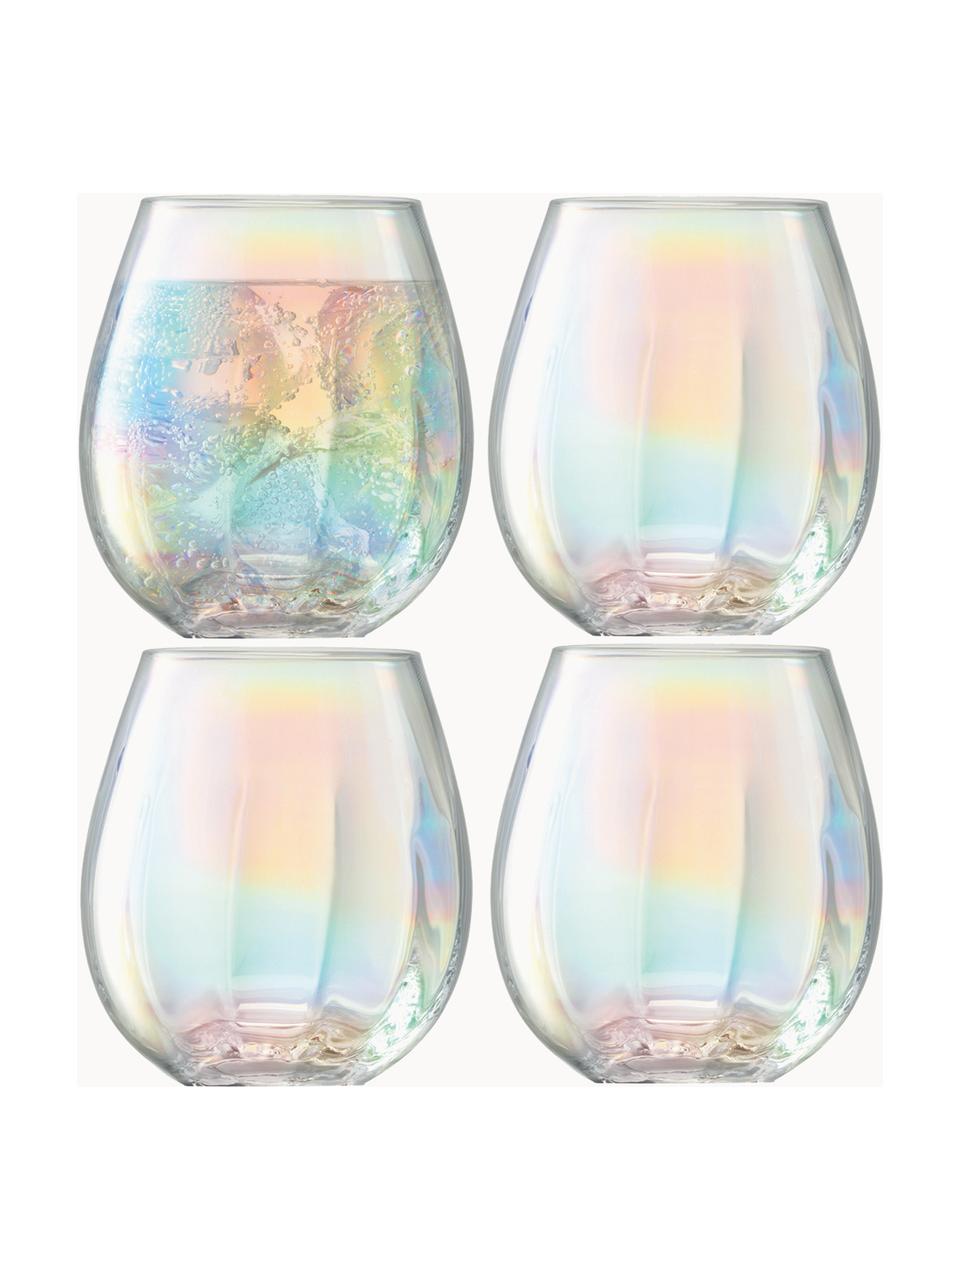 Bicchiere in vetro soffiato con riflessi madreperlacei Pearl 4 pz, Vetro, Trasparente, iridescente, Ø 9 x Alt. 10 cm, 425 ml